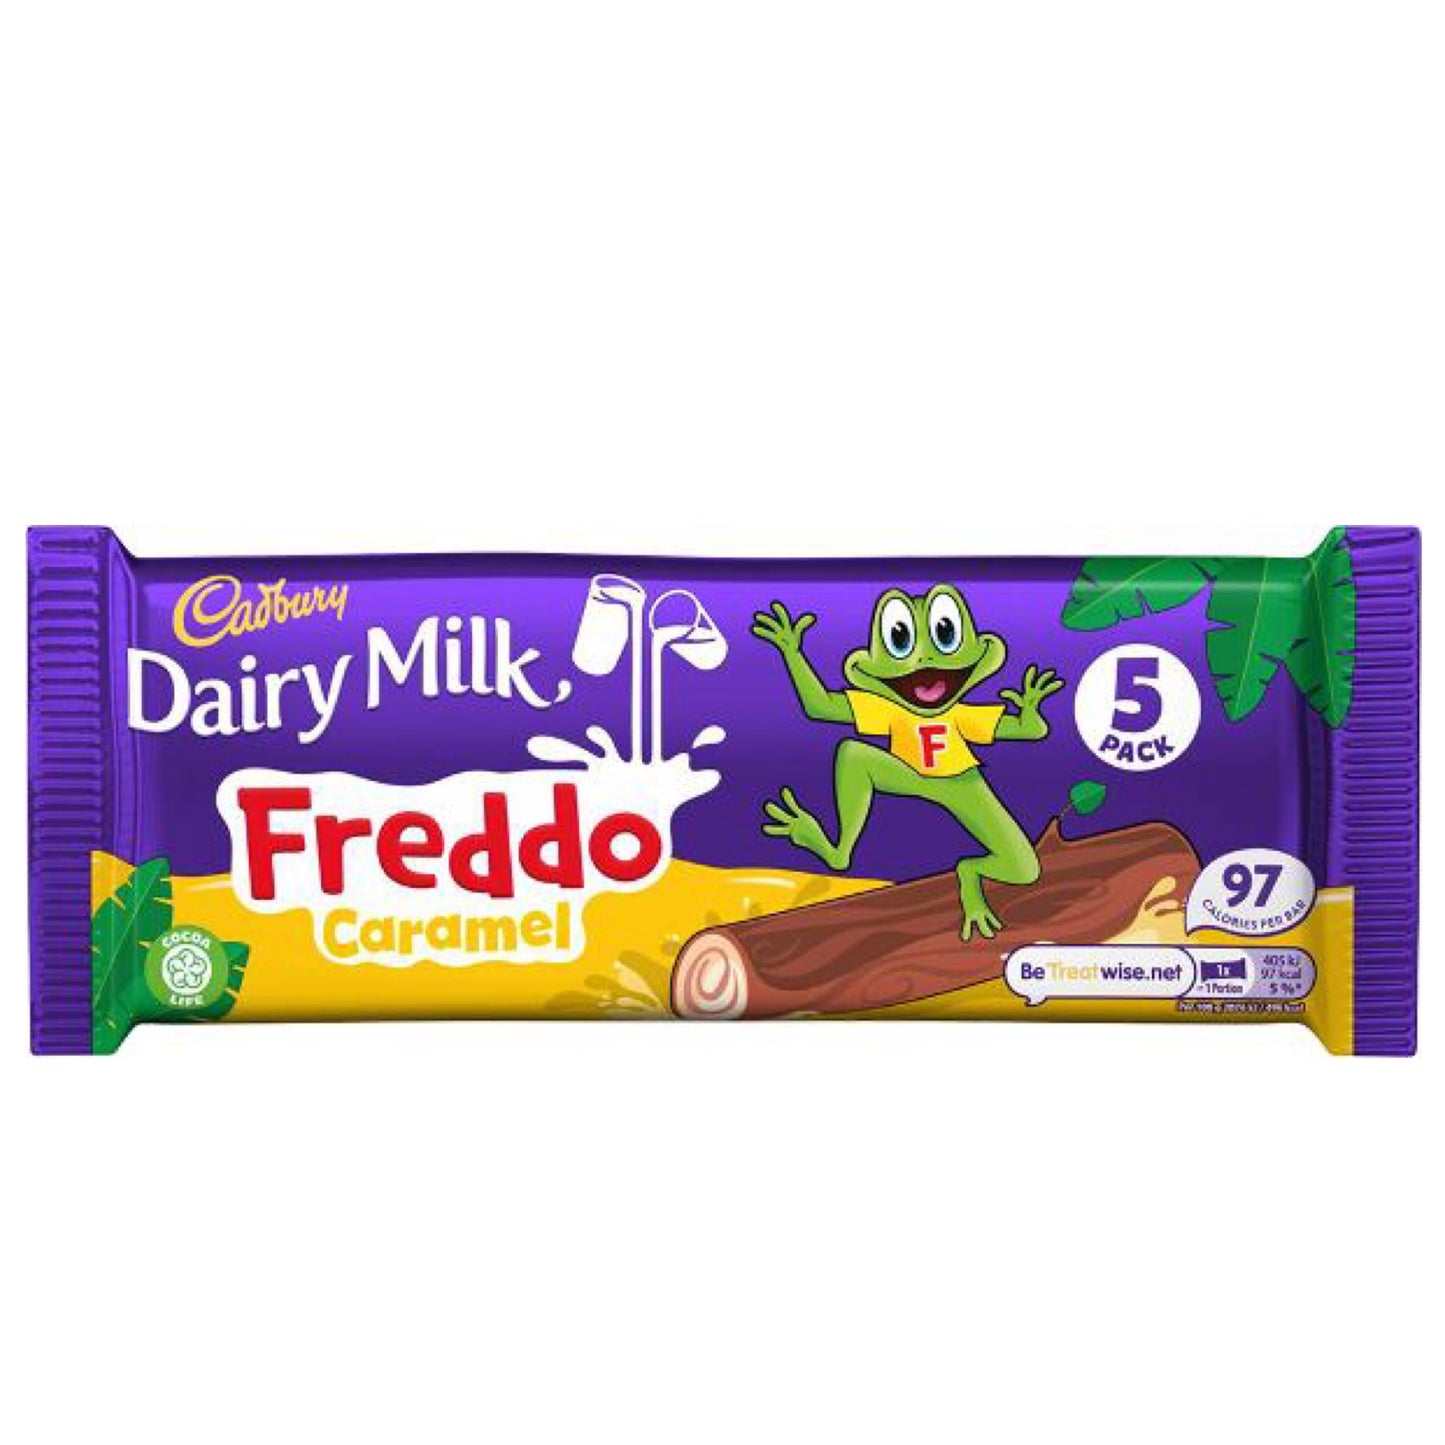 UK Cadbury Dairy Milk Freddo 5 pack